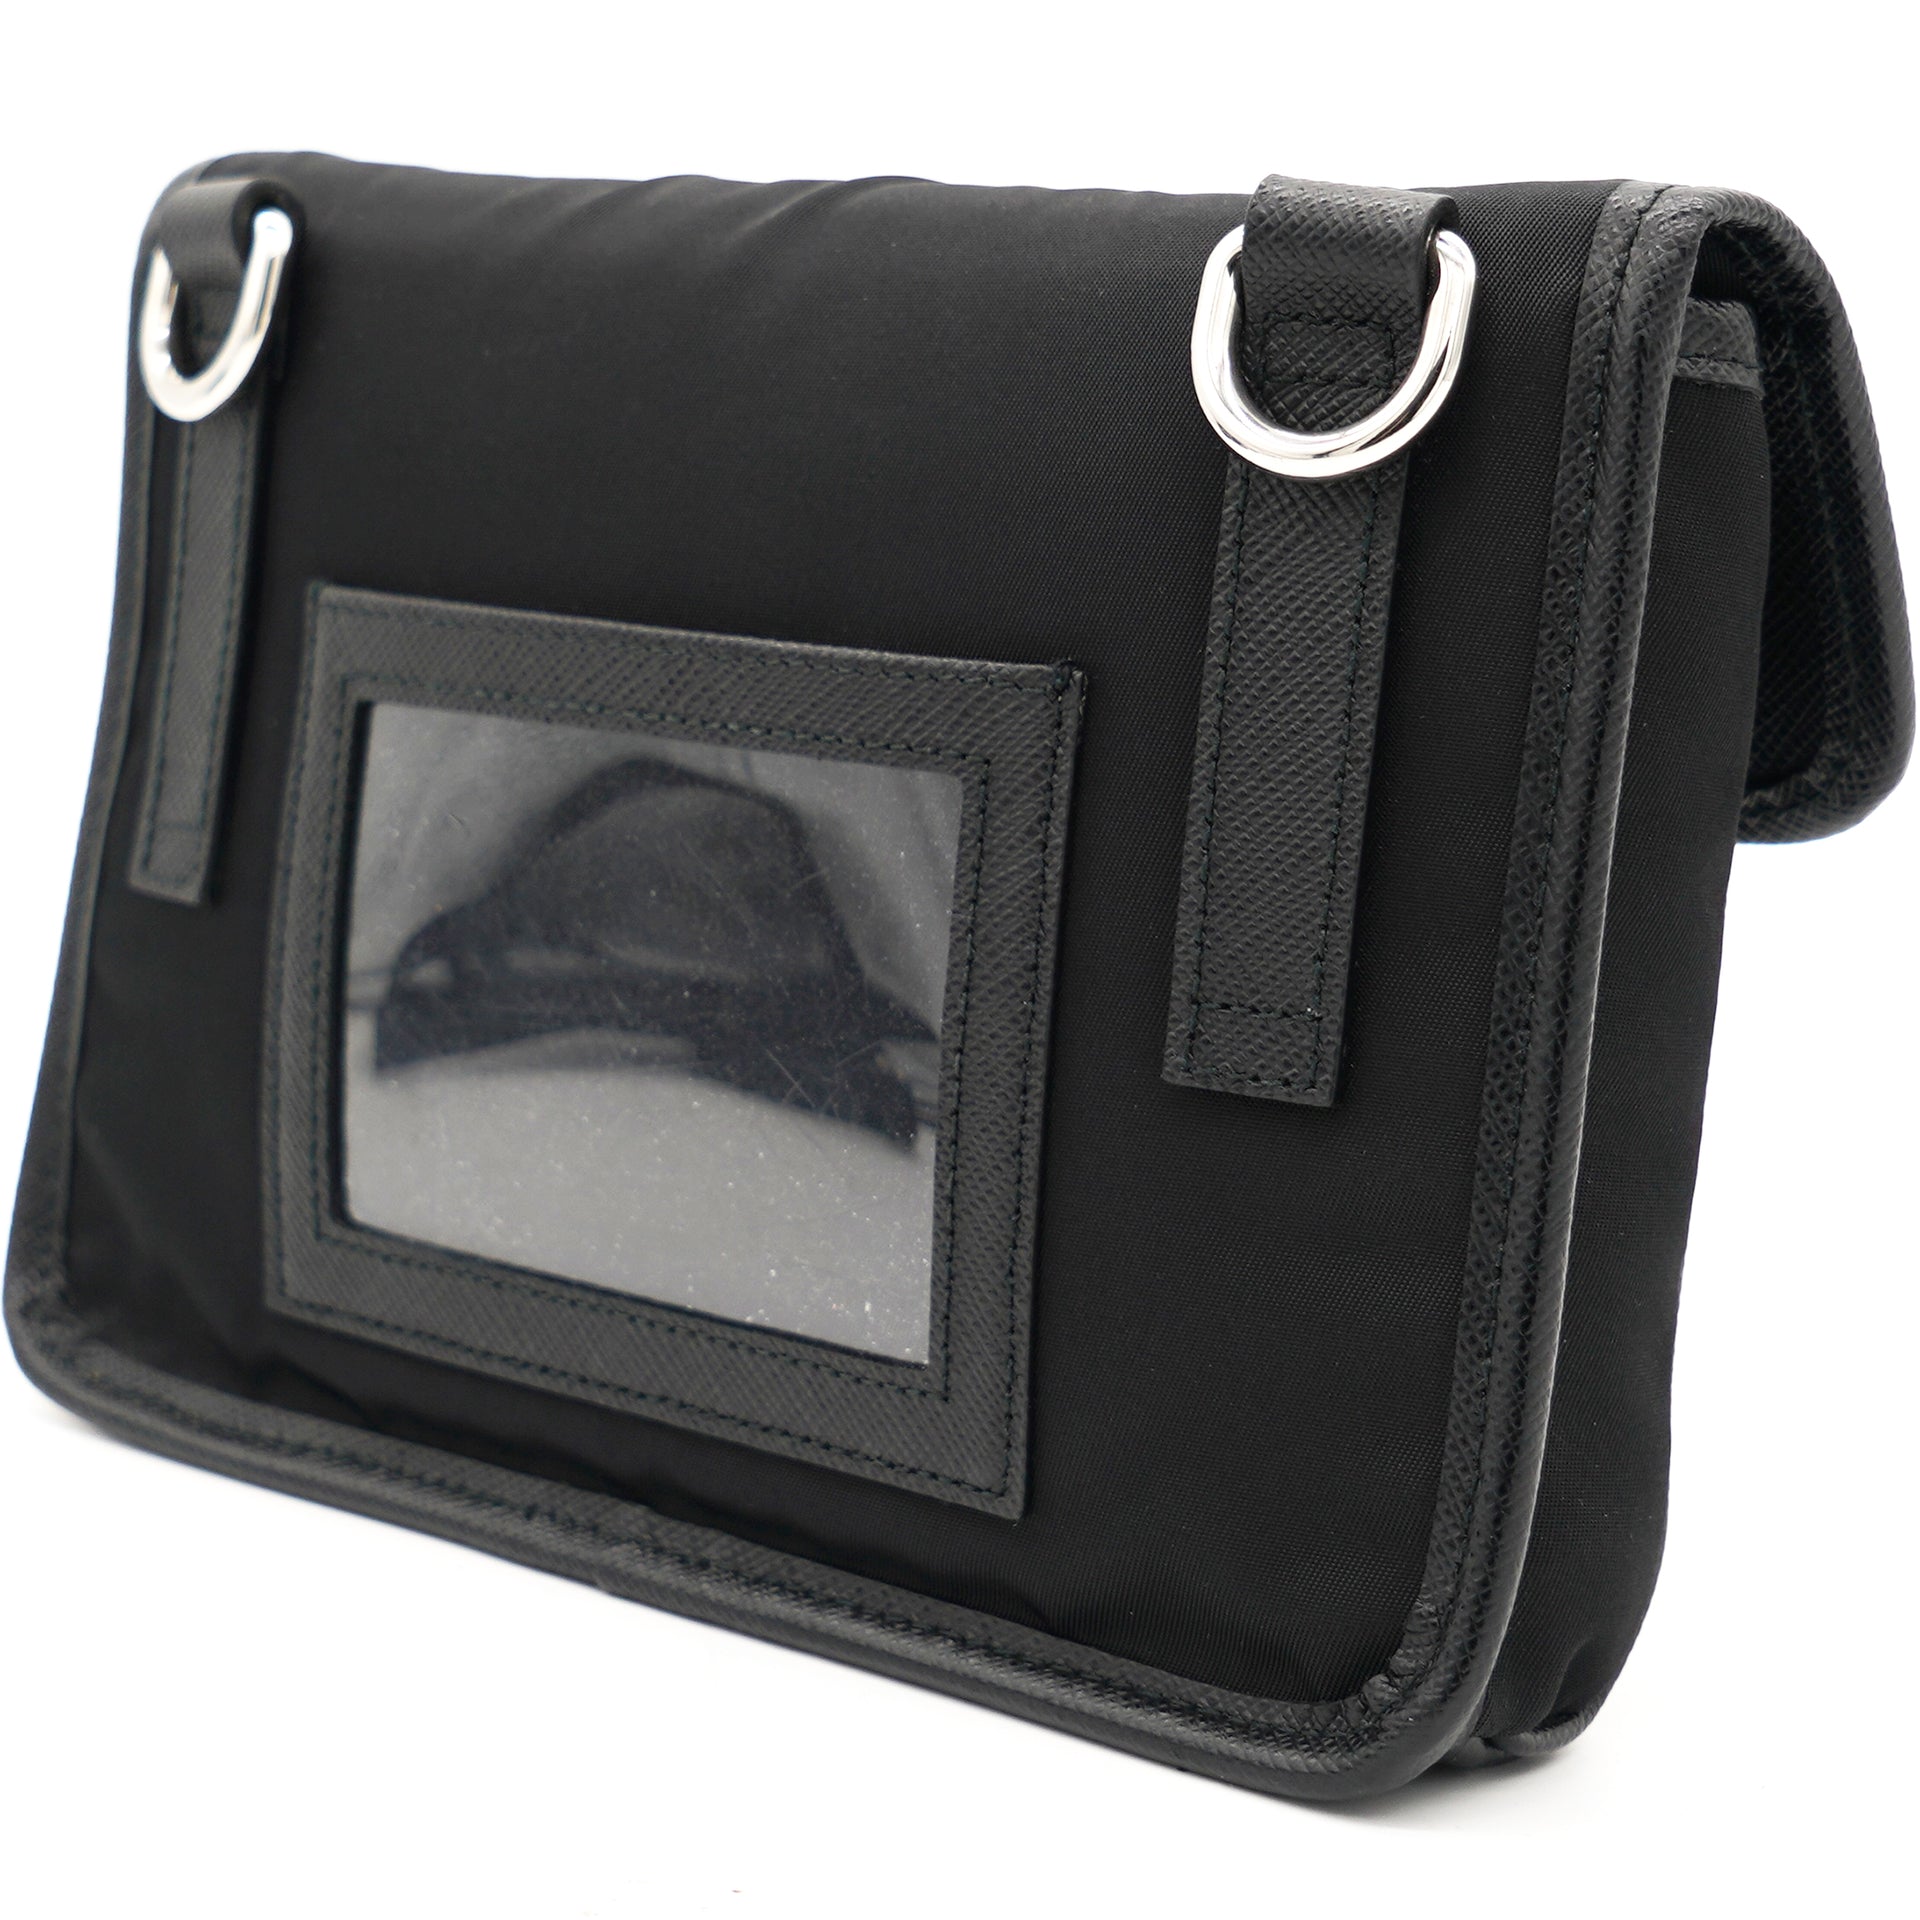 Re-Nylon and Saffiano Leather Smartphone Case